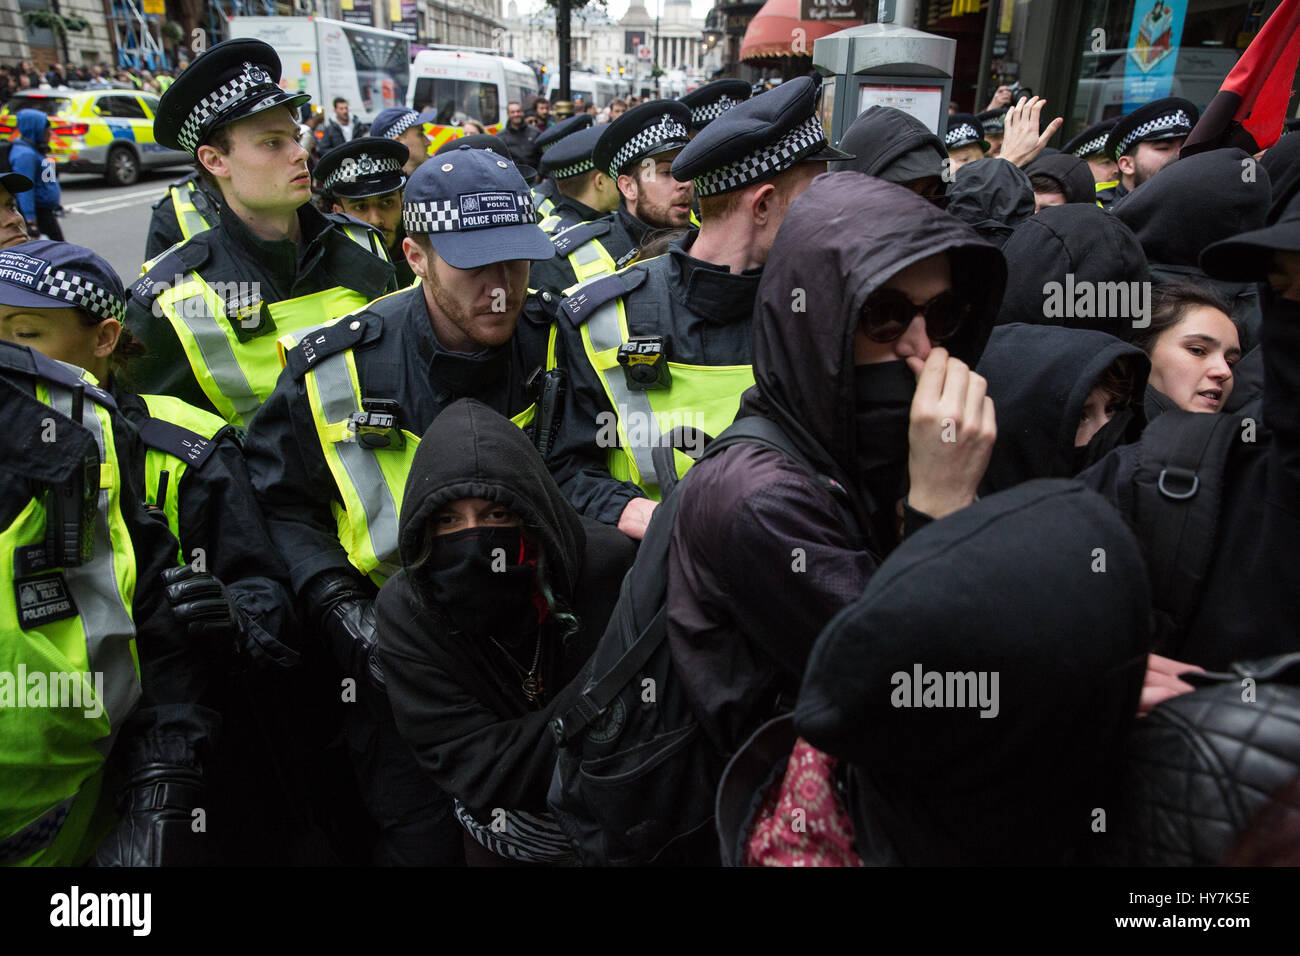 Londra, Regno Unito. Il 1 aprile, 2017. Gli ufficiali di polizia si muovono i sostenitori di unirsi contro il fascismo e altri gruppi antifascisti lungo Whitehall lontano da un pub occupato dai membri di estrema destra della Difesa inglese League. Credito: Mark Kerrison/Alamy Live News Foto Stock